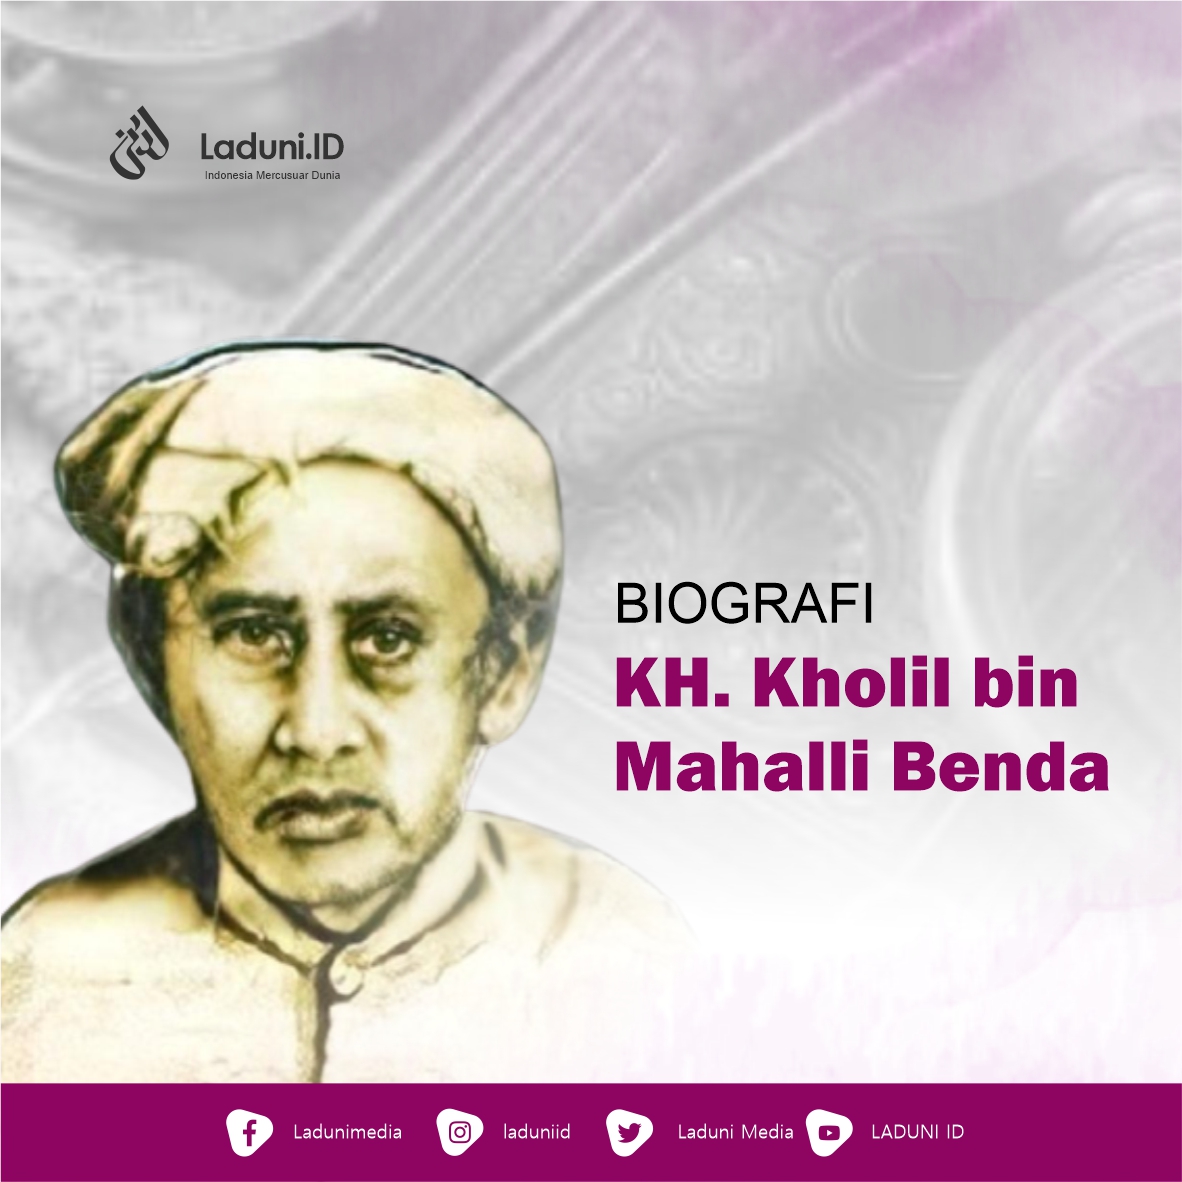 Biografi KH. Kholil bin Mahalli Benda